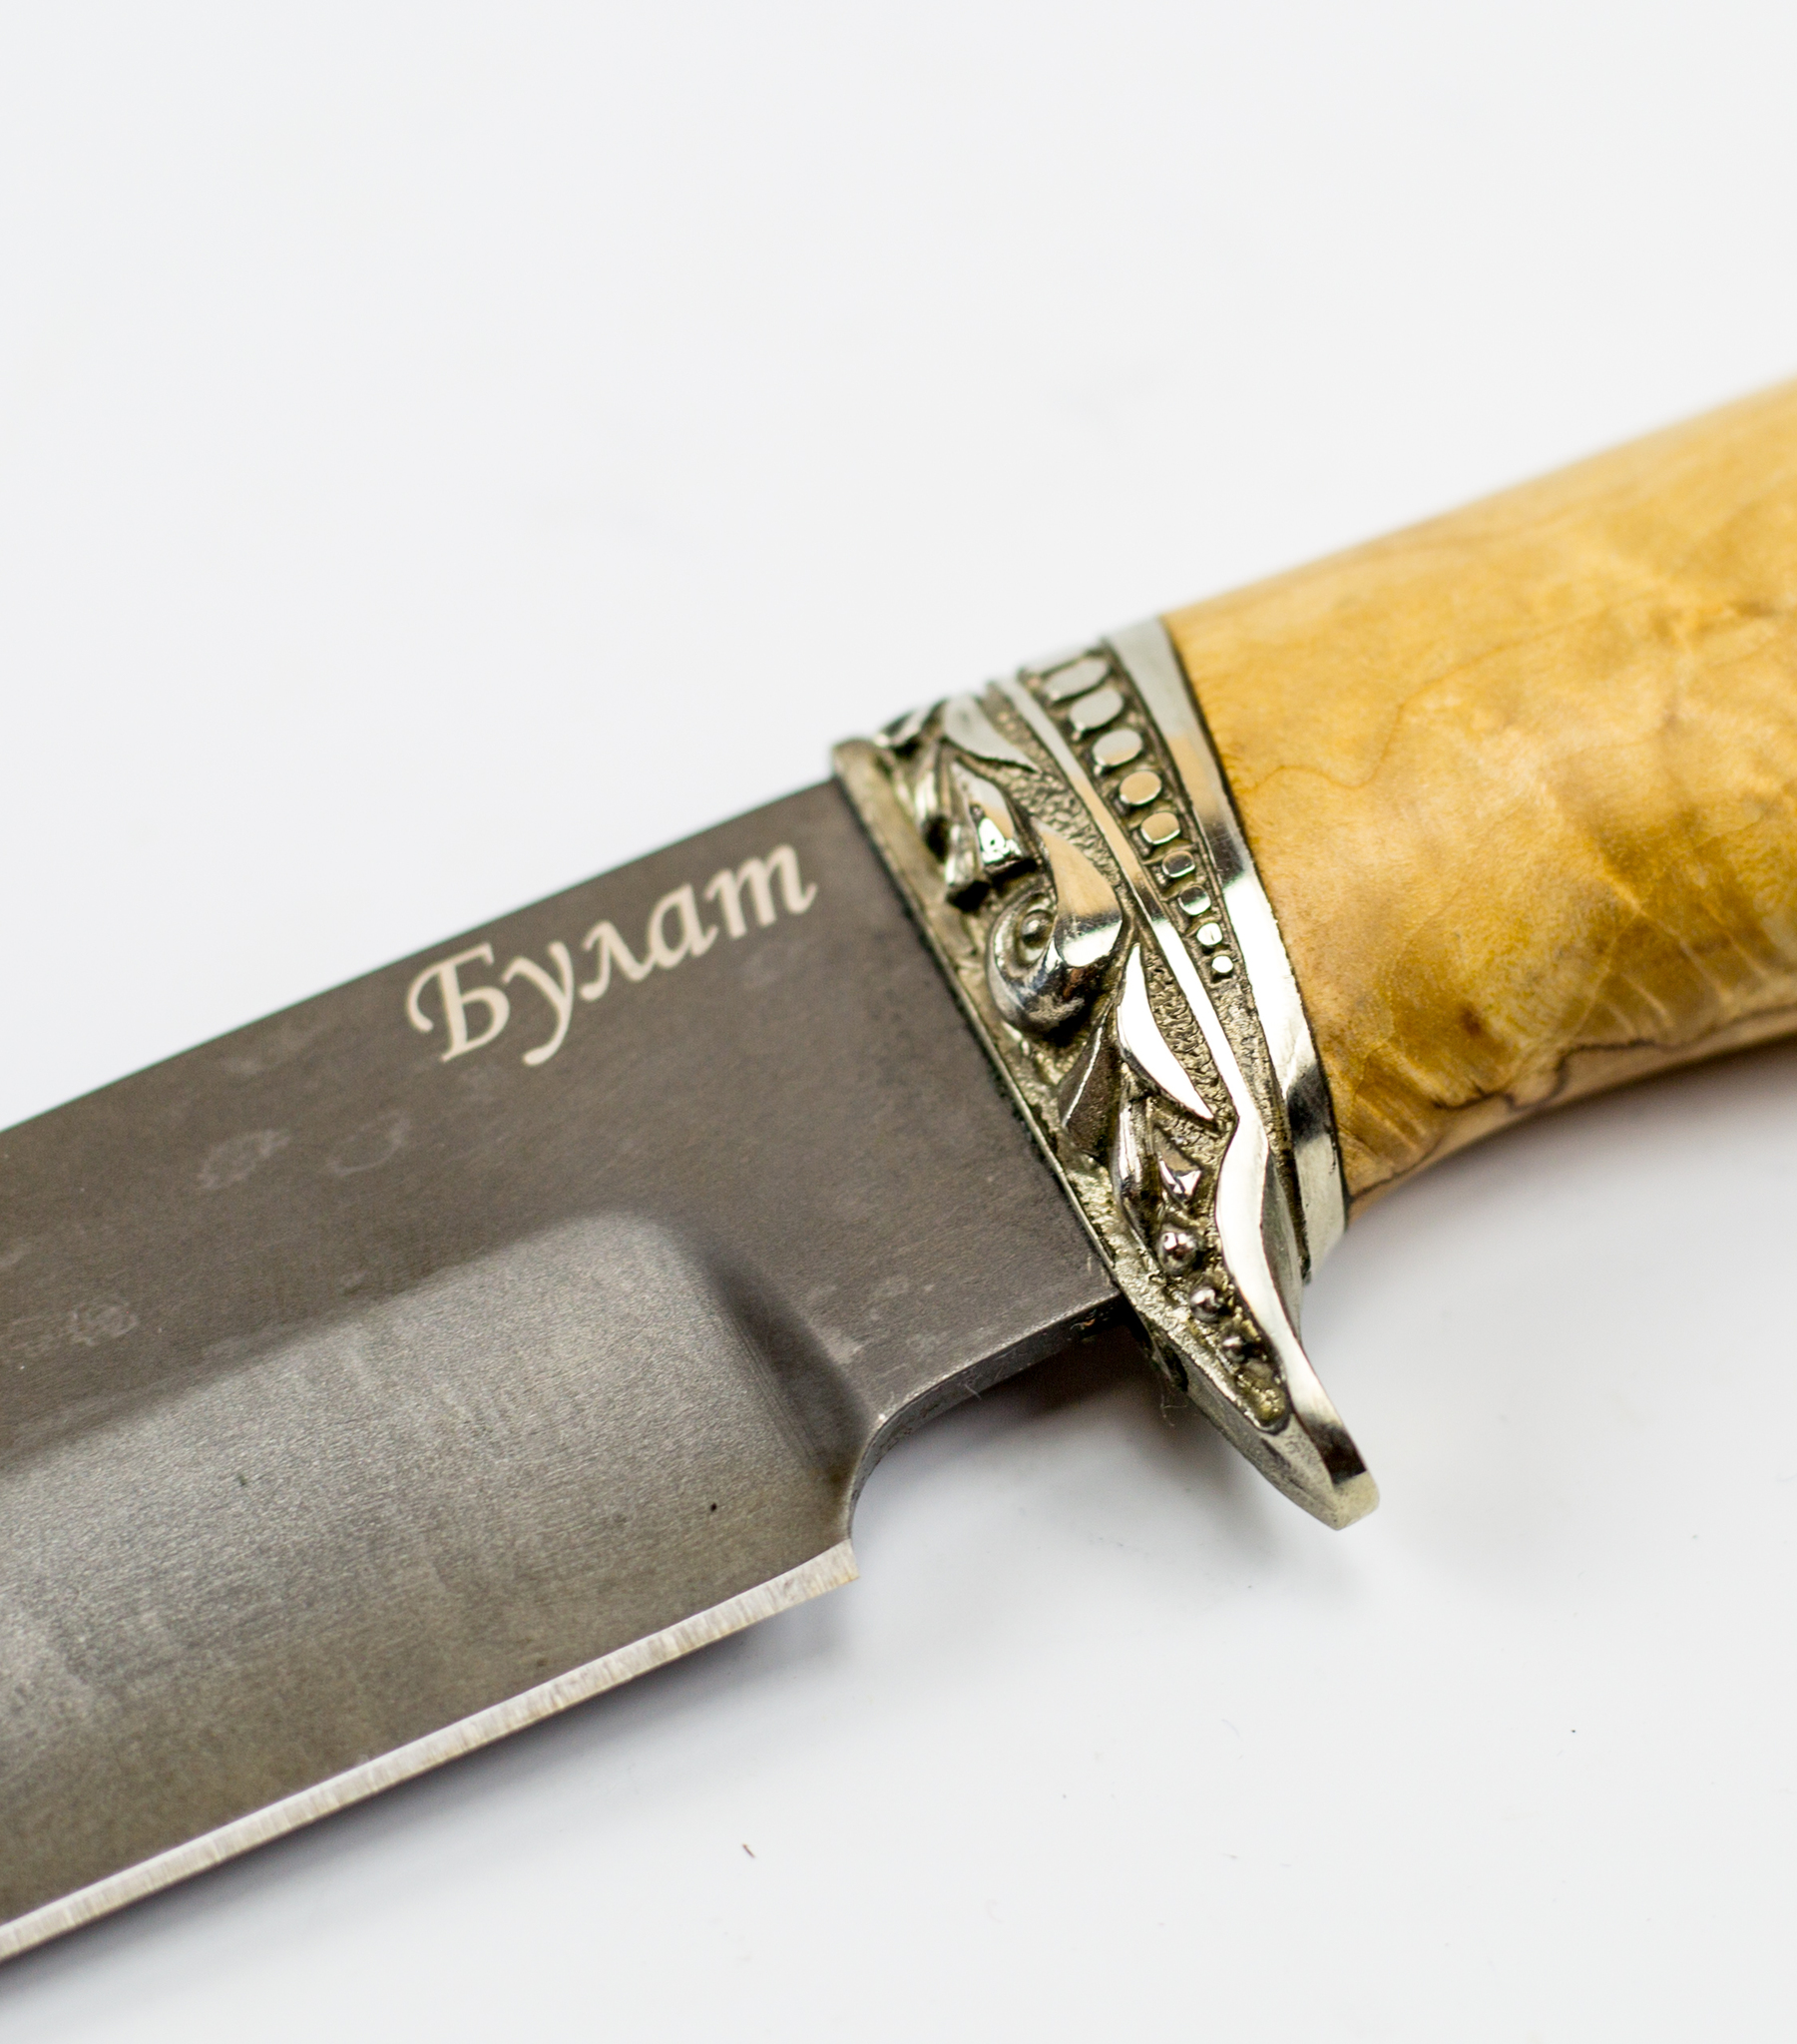 Нож Хищник-2, сталь булат, карельская береза от Ножиков